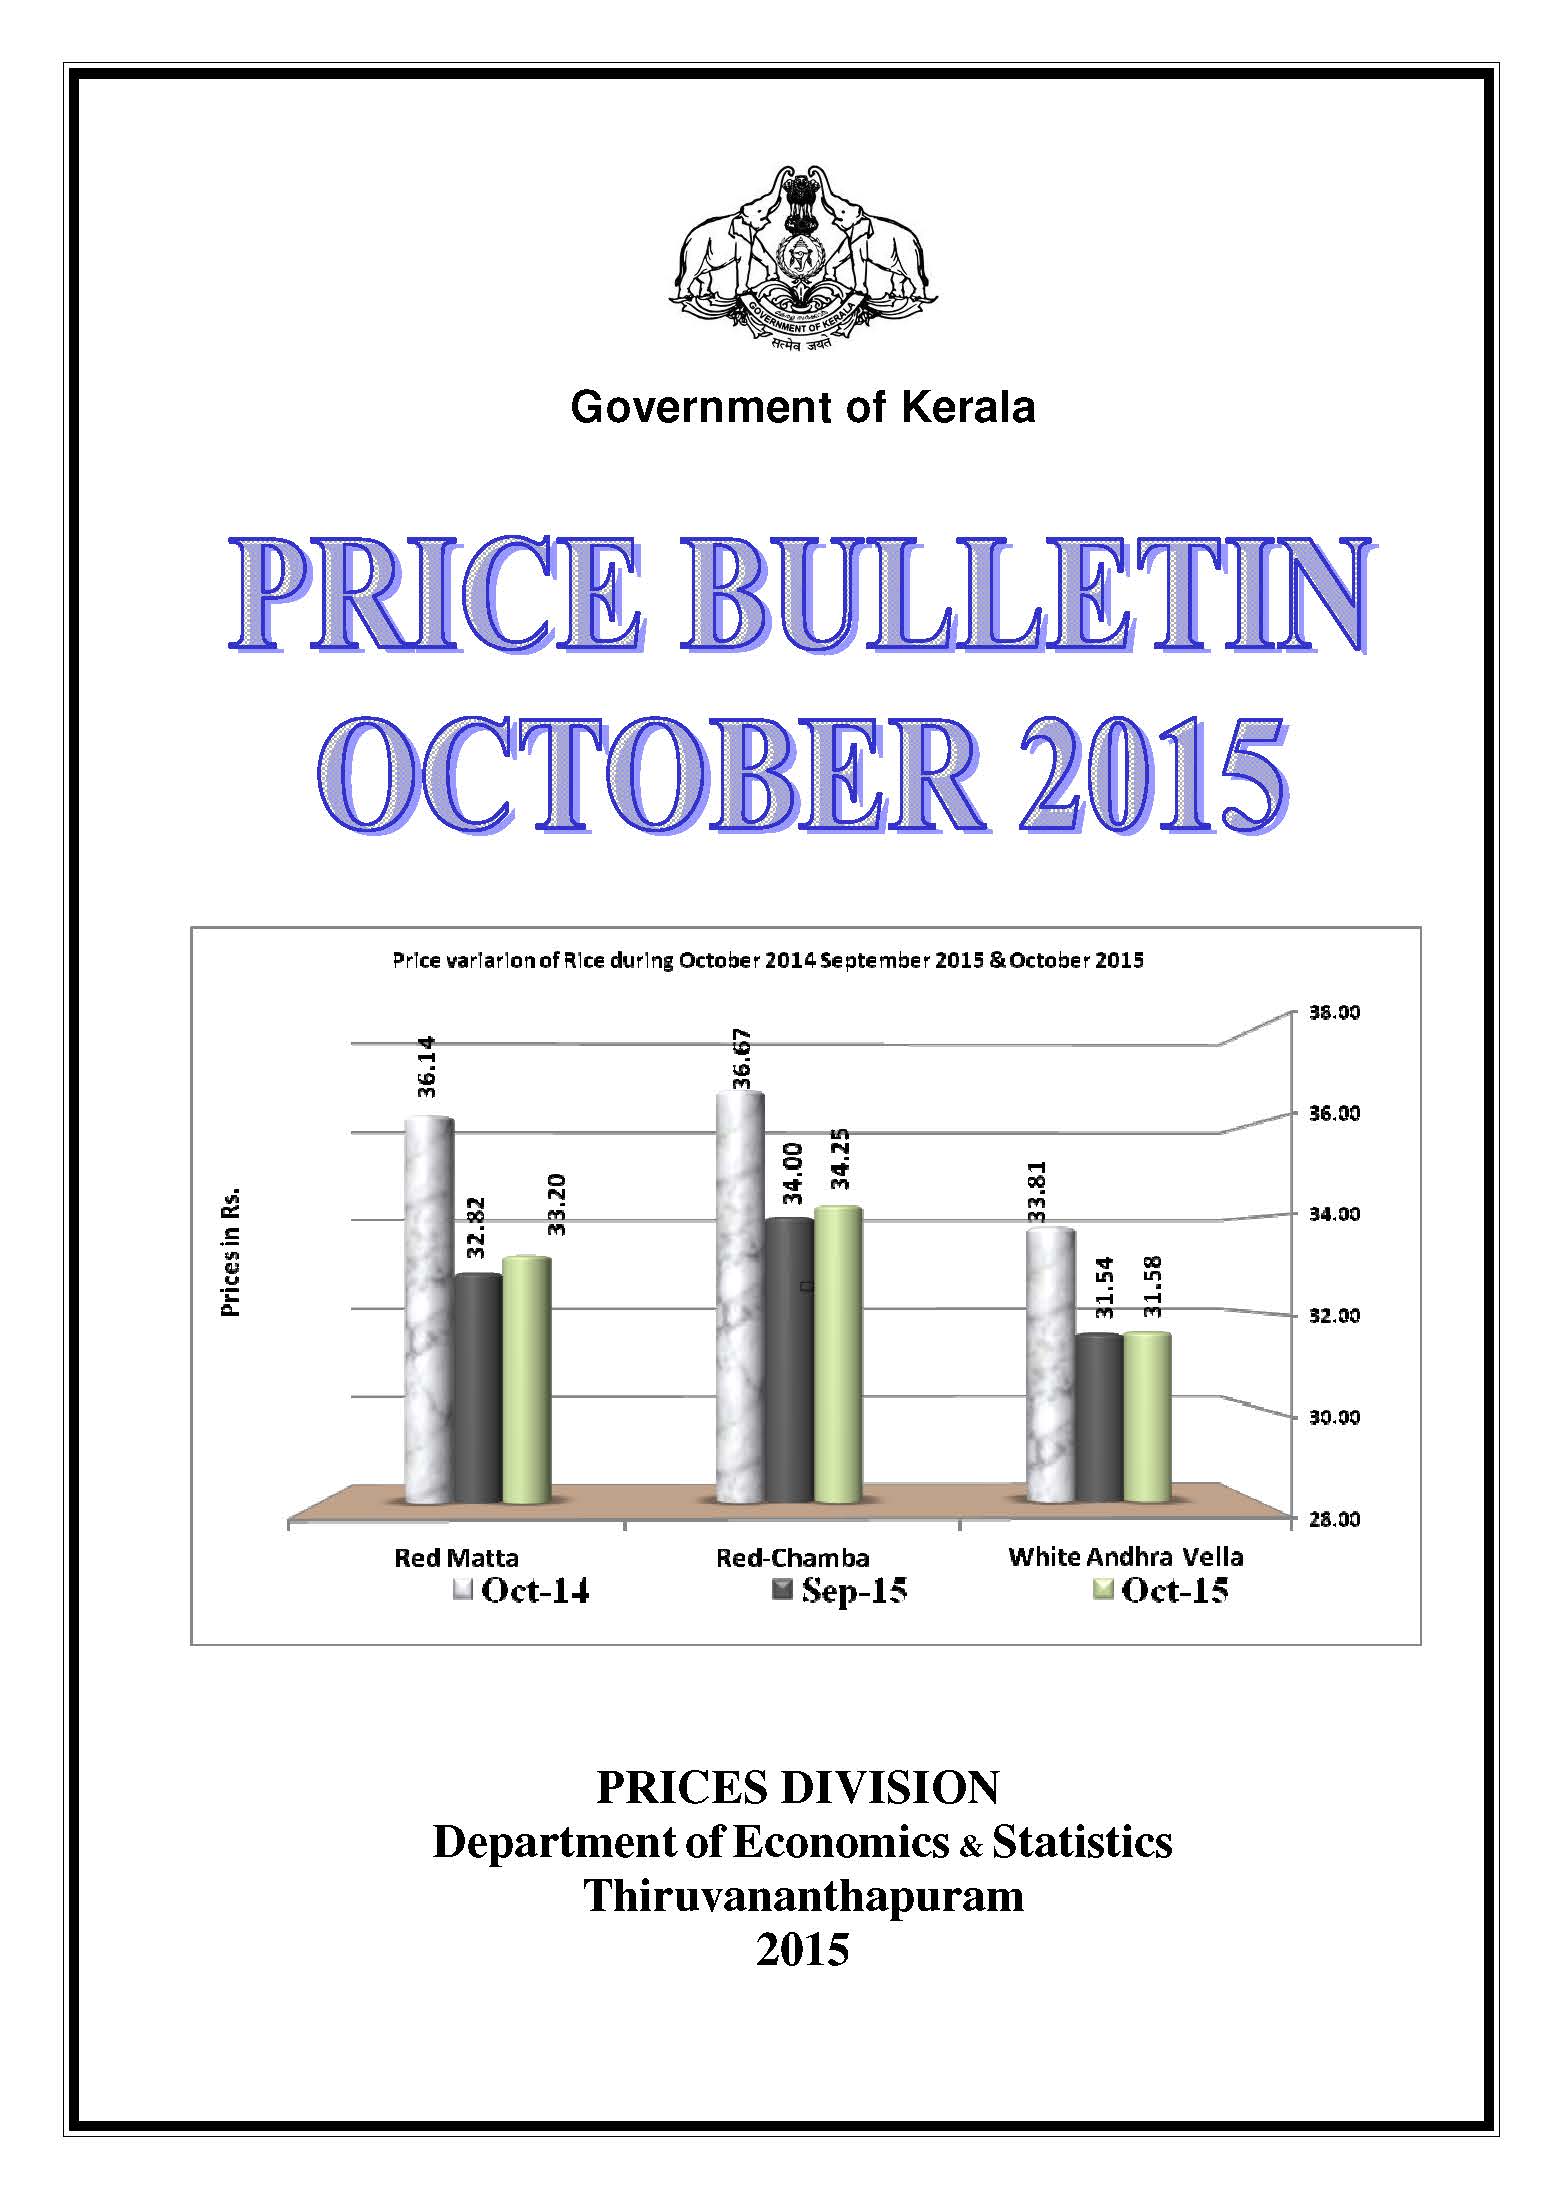 Price Bulletin October 2015